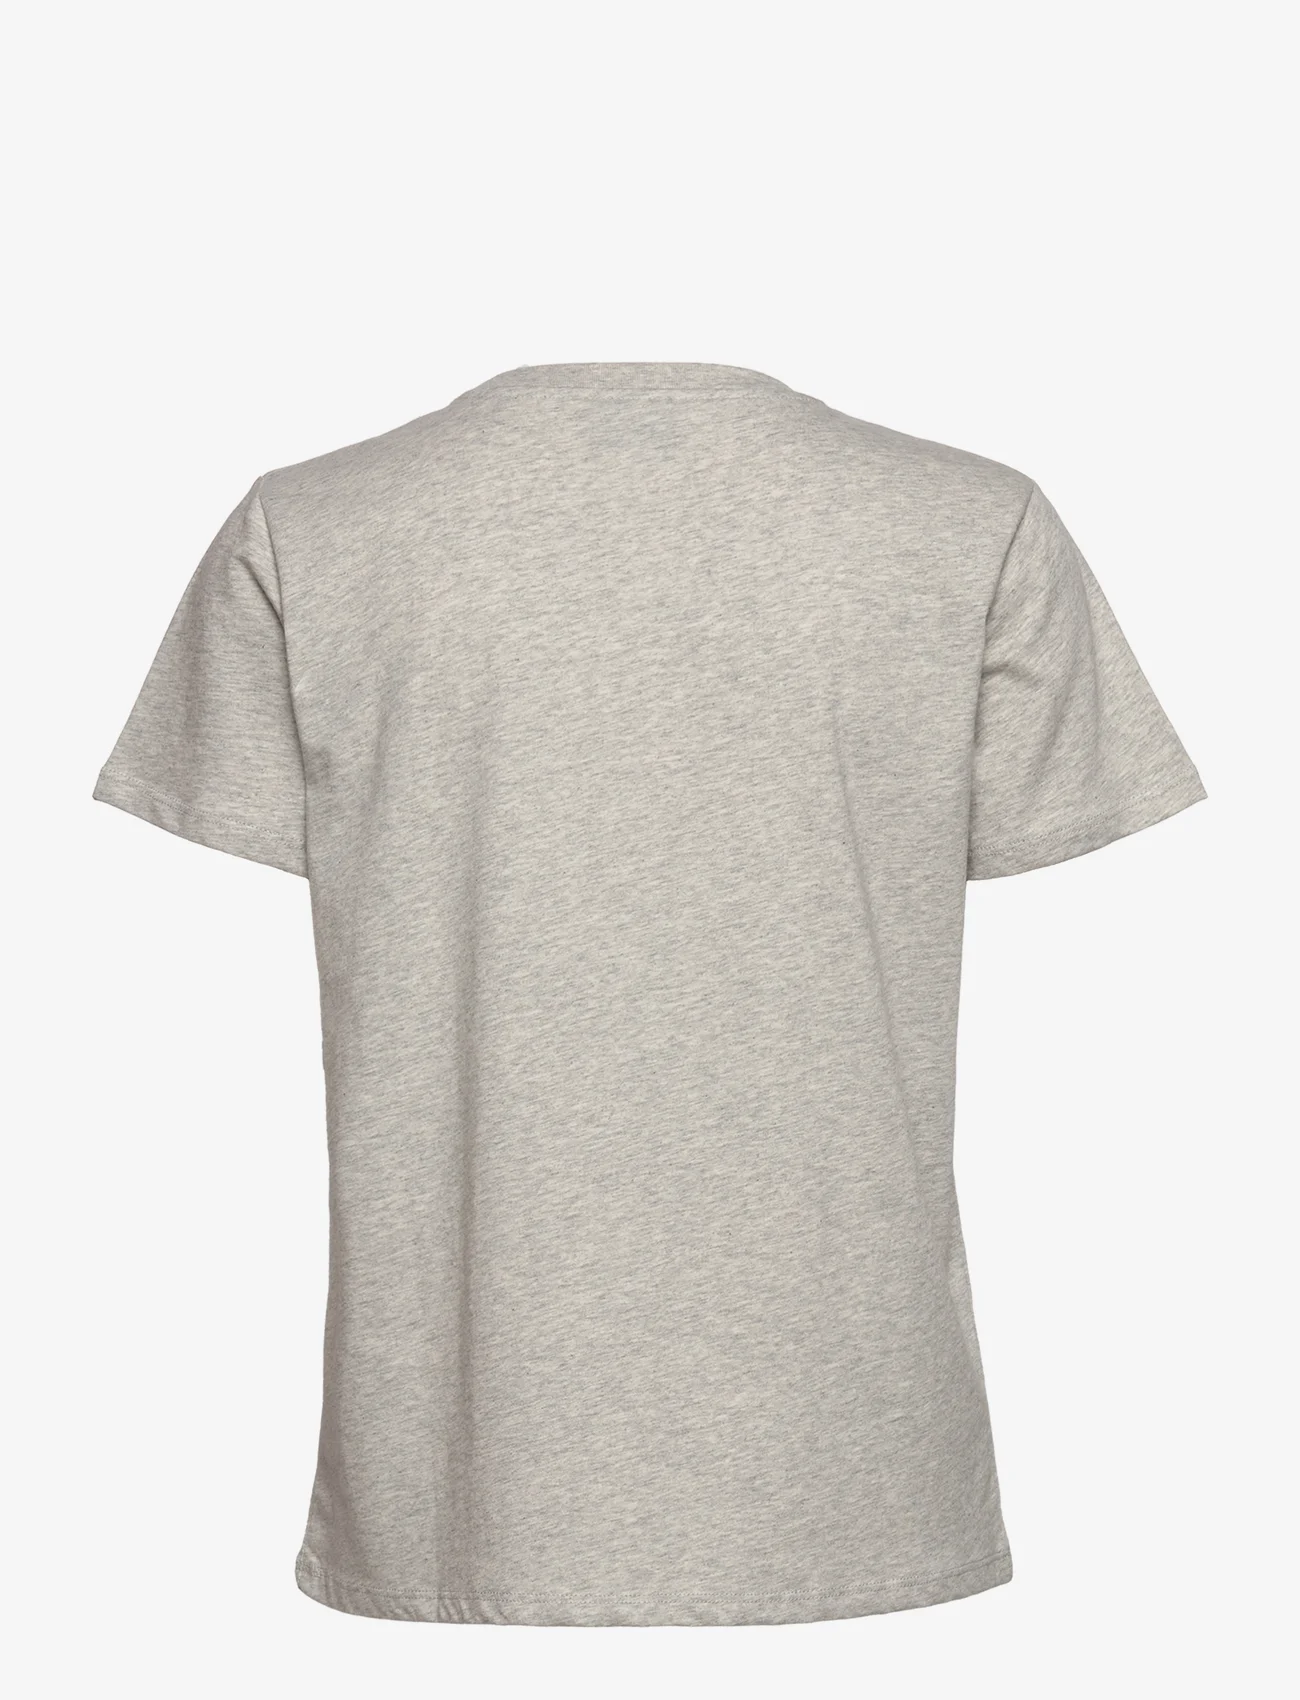 Mads Nørgaard - Single Organic Trenda P Tee - marškinėliai - light grey melange - 1